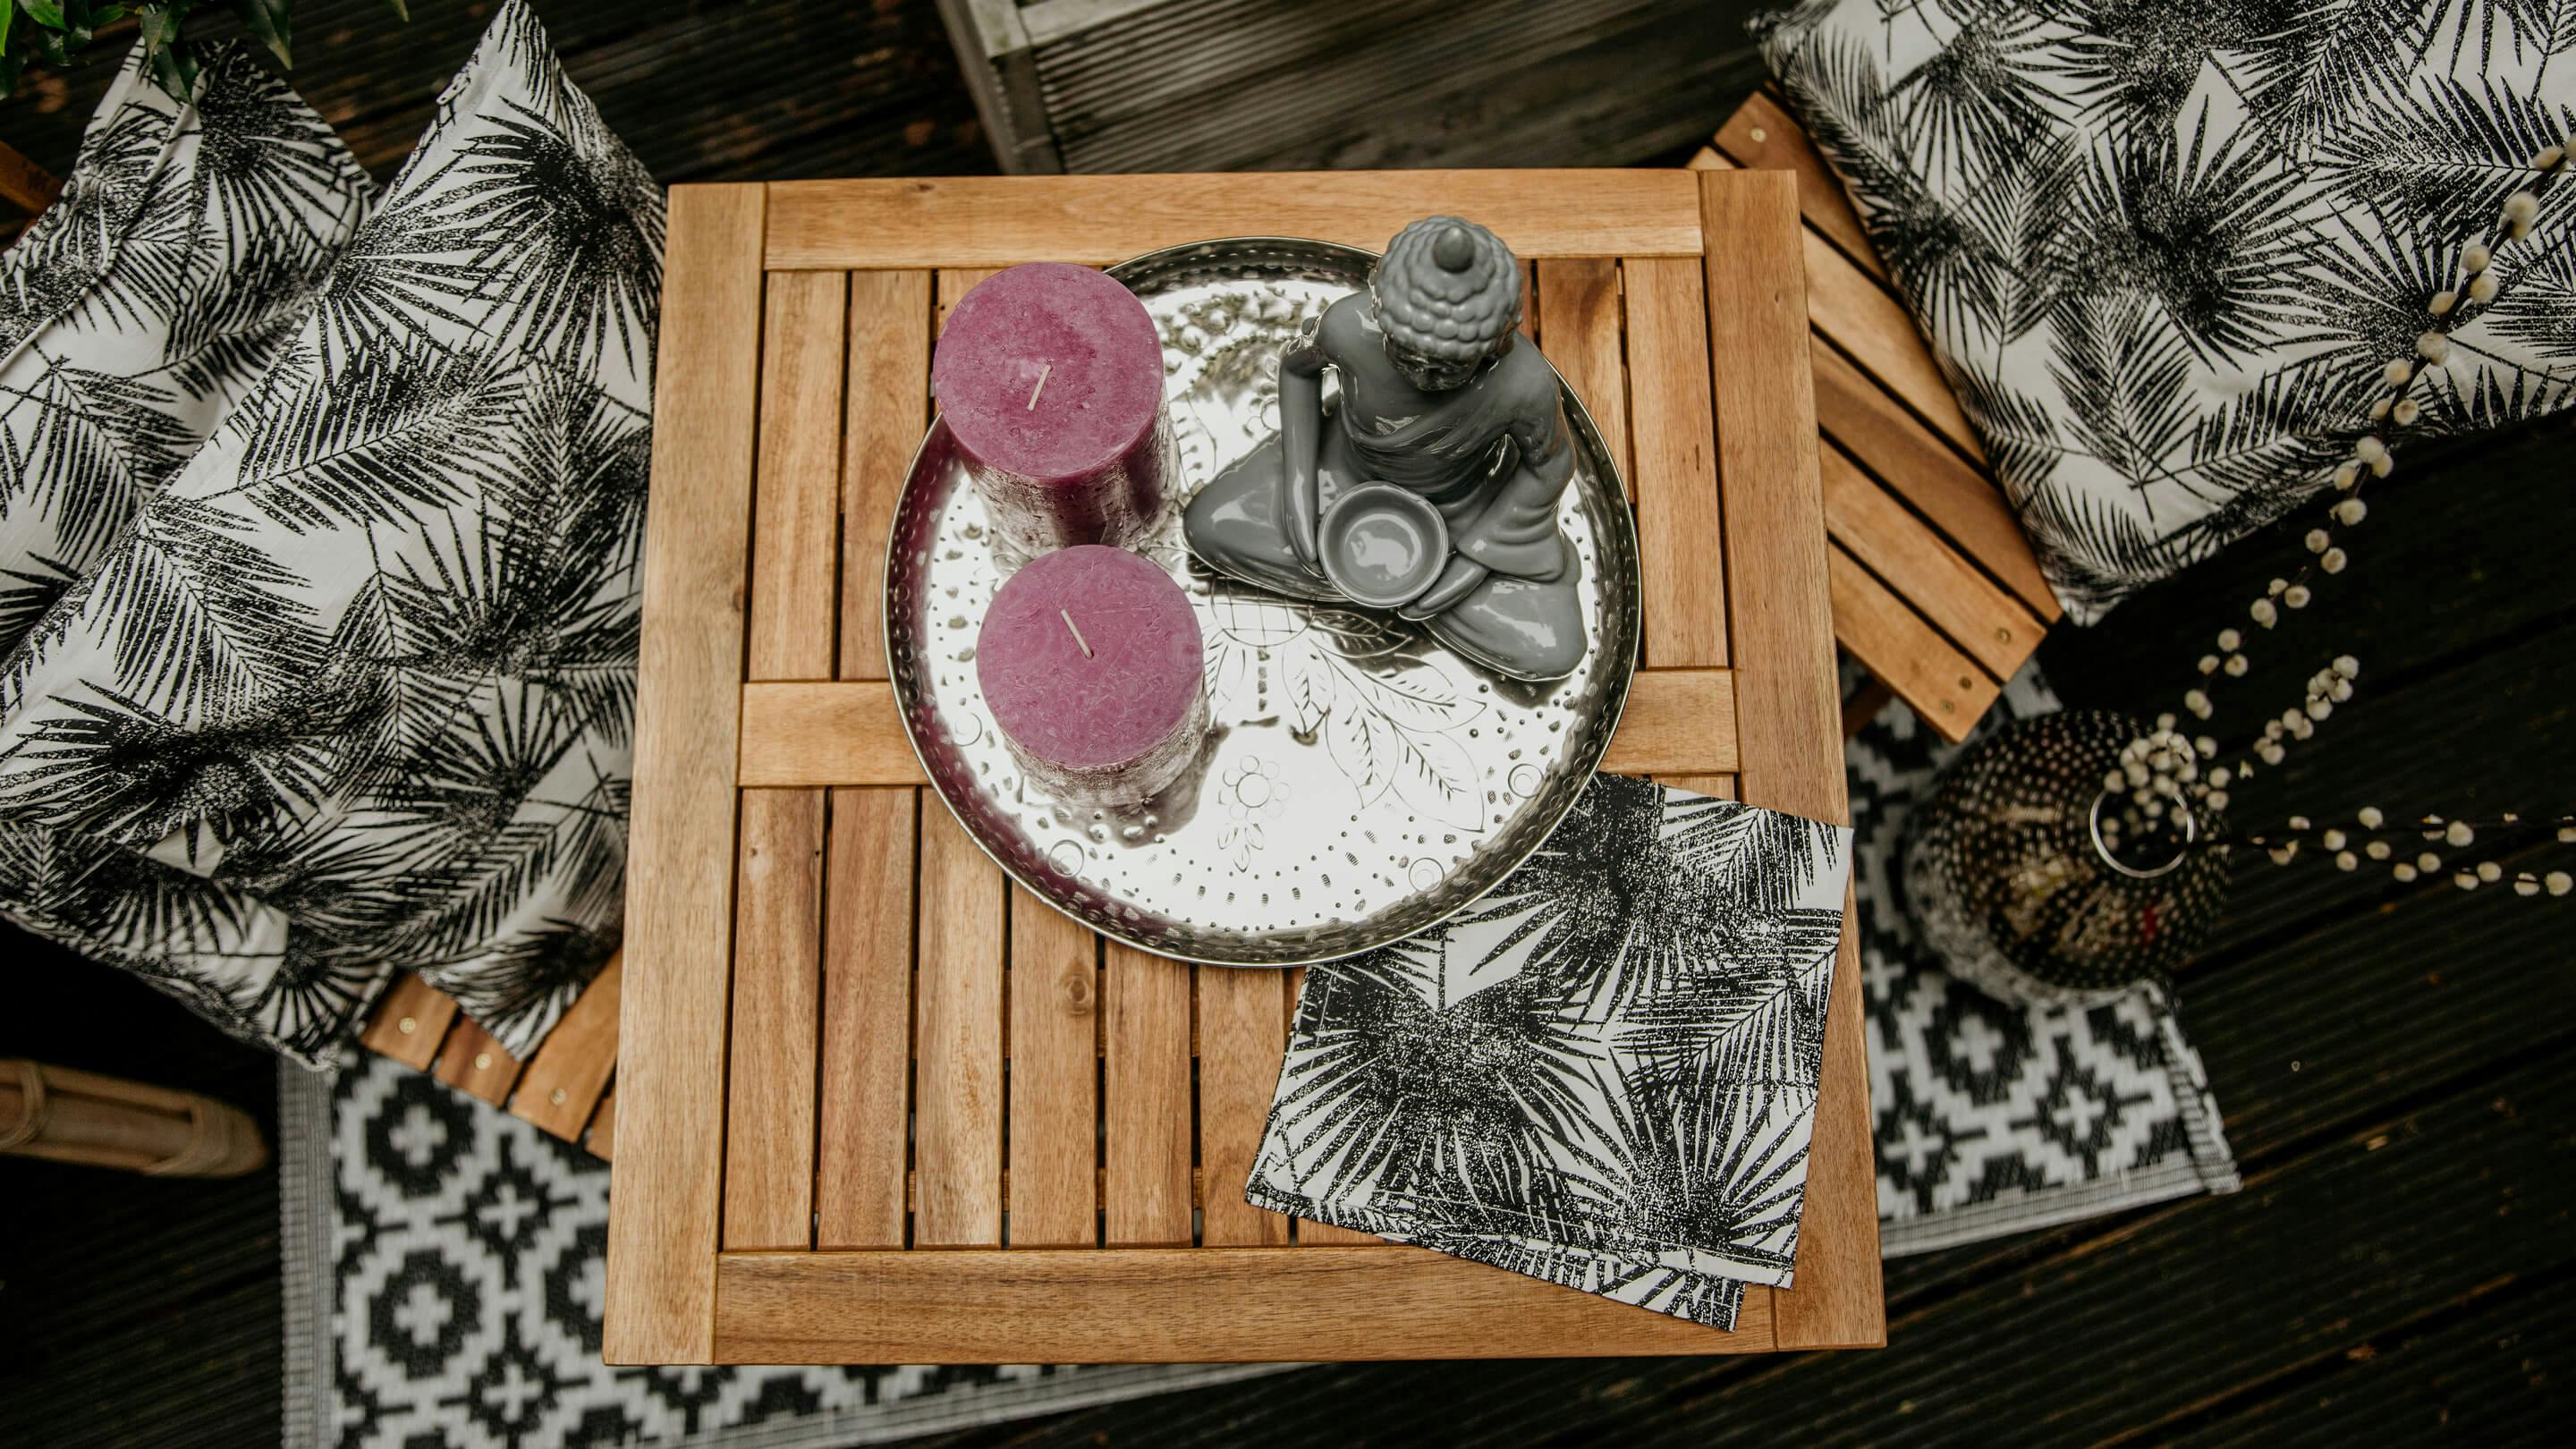 Tischecke auf Terrasse von oben gesehen: runder Deko-Teller in Silber mit Kerzen und Kerzenhalter in Grau (Marke: Butlers).